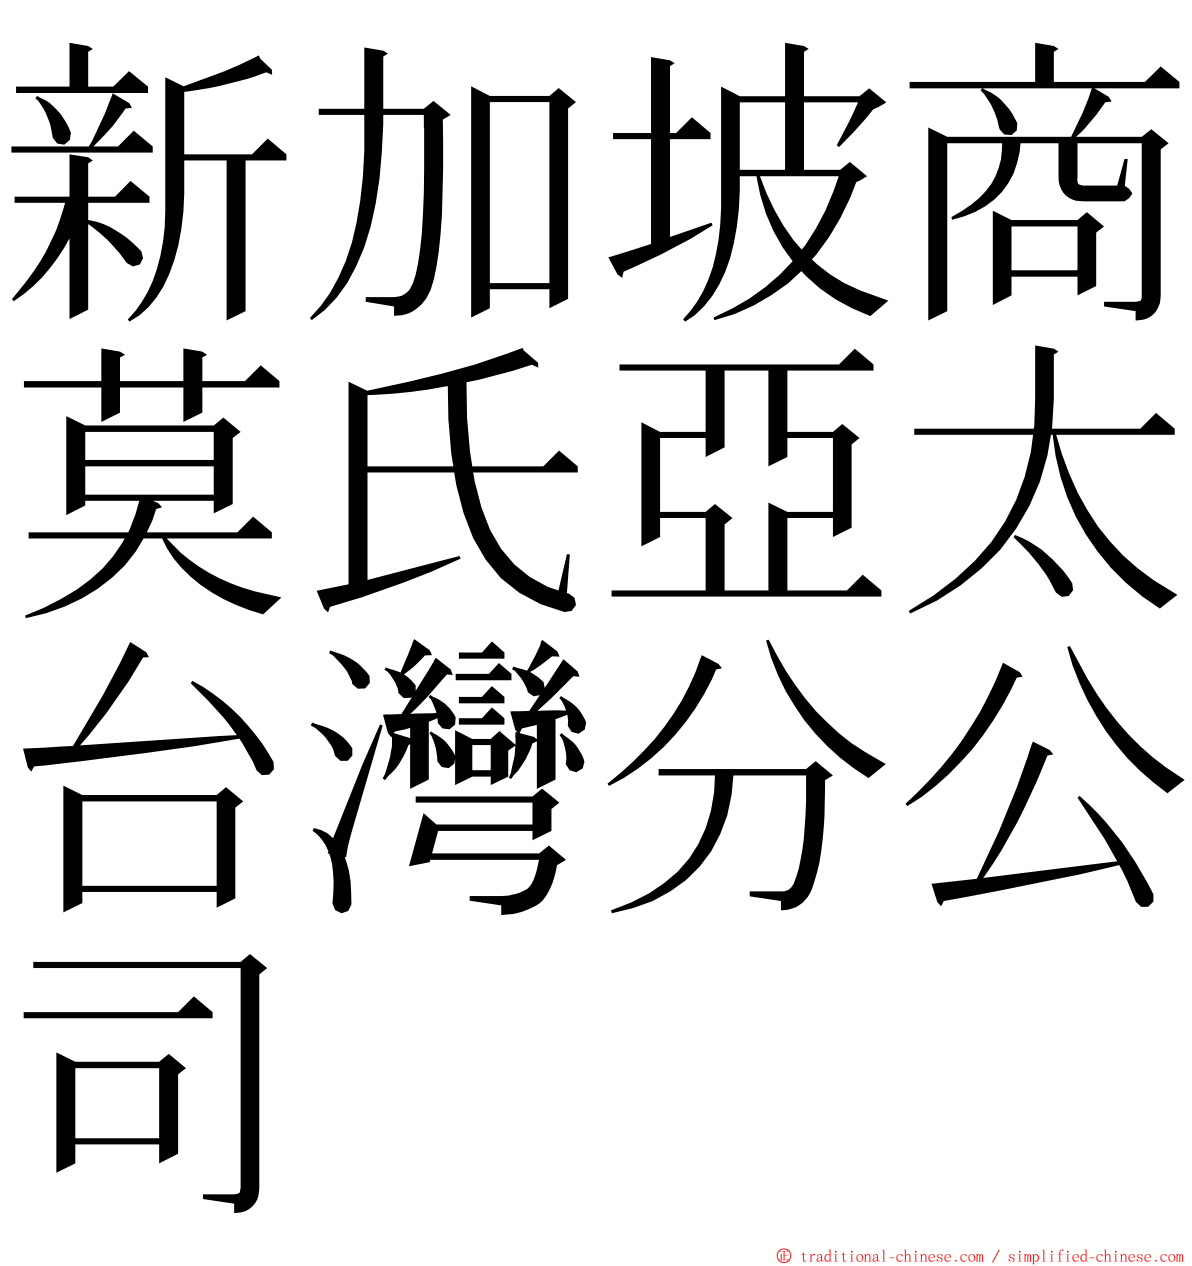 新加坡商莫氏亞太台灣分公司 ming font